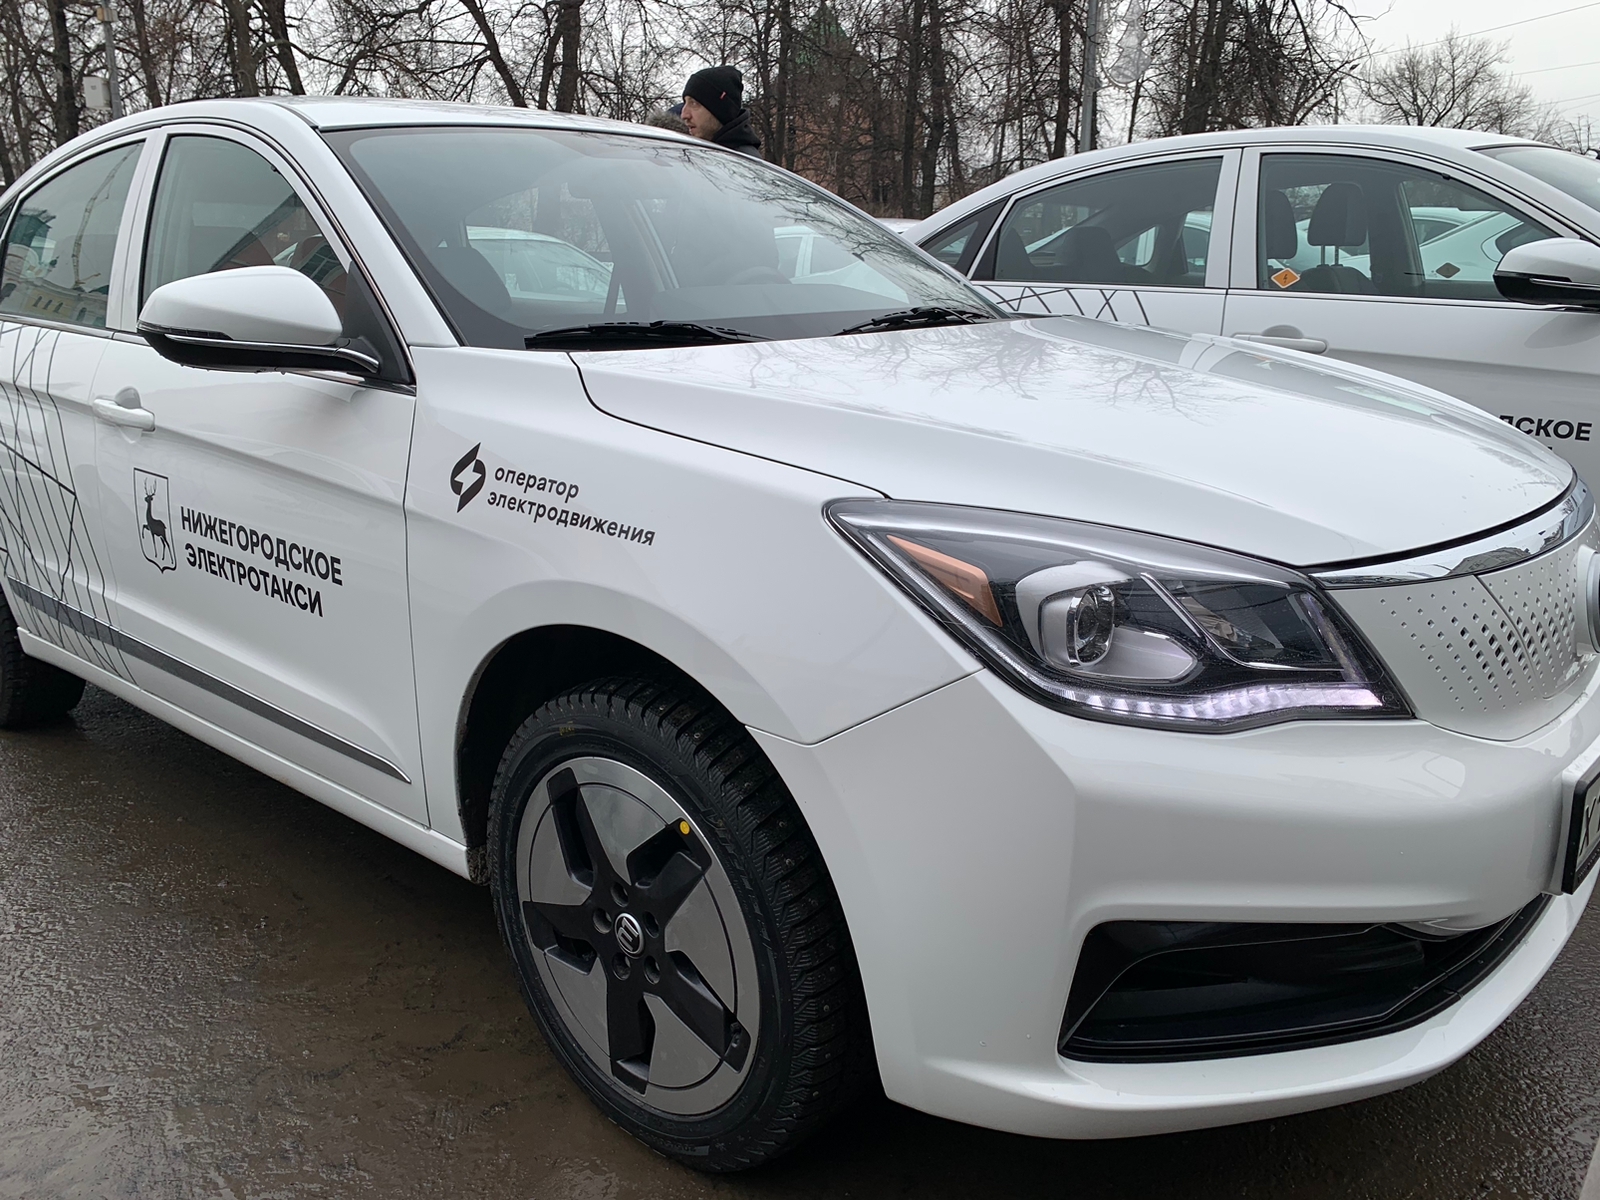 CARCADE профинансировала 180 электрокаров EVOLUTE для таксопарка Нижнего Новгорода